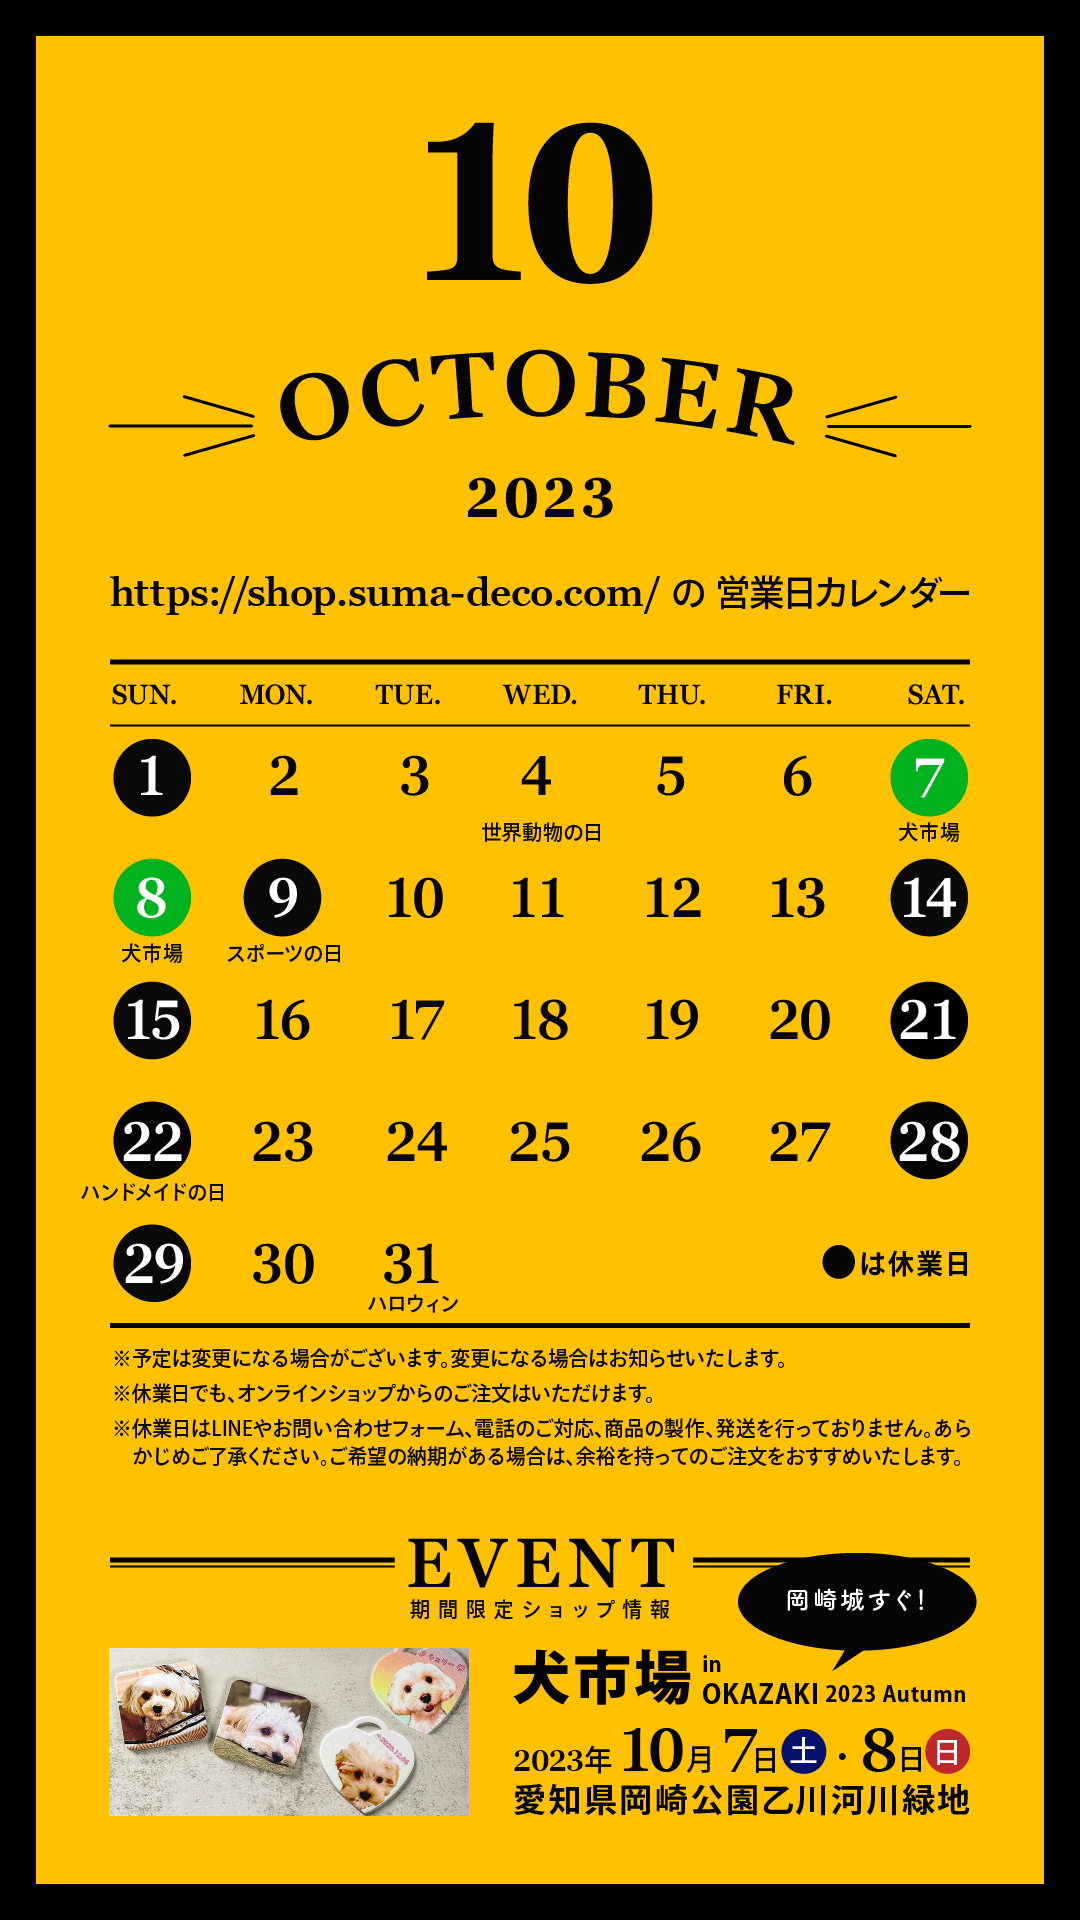 2023年10月の営業日とイベント出店のお知らせ【10/7・8犬市場(愛知県)】